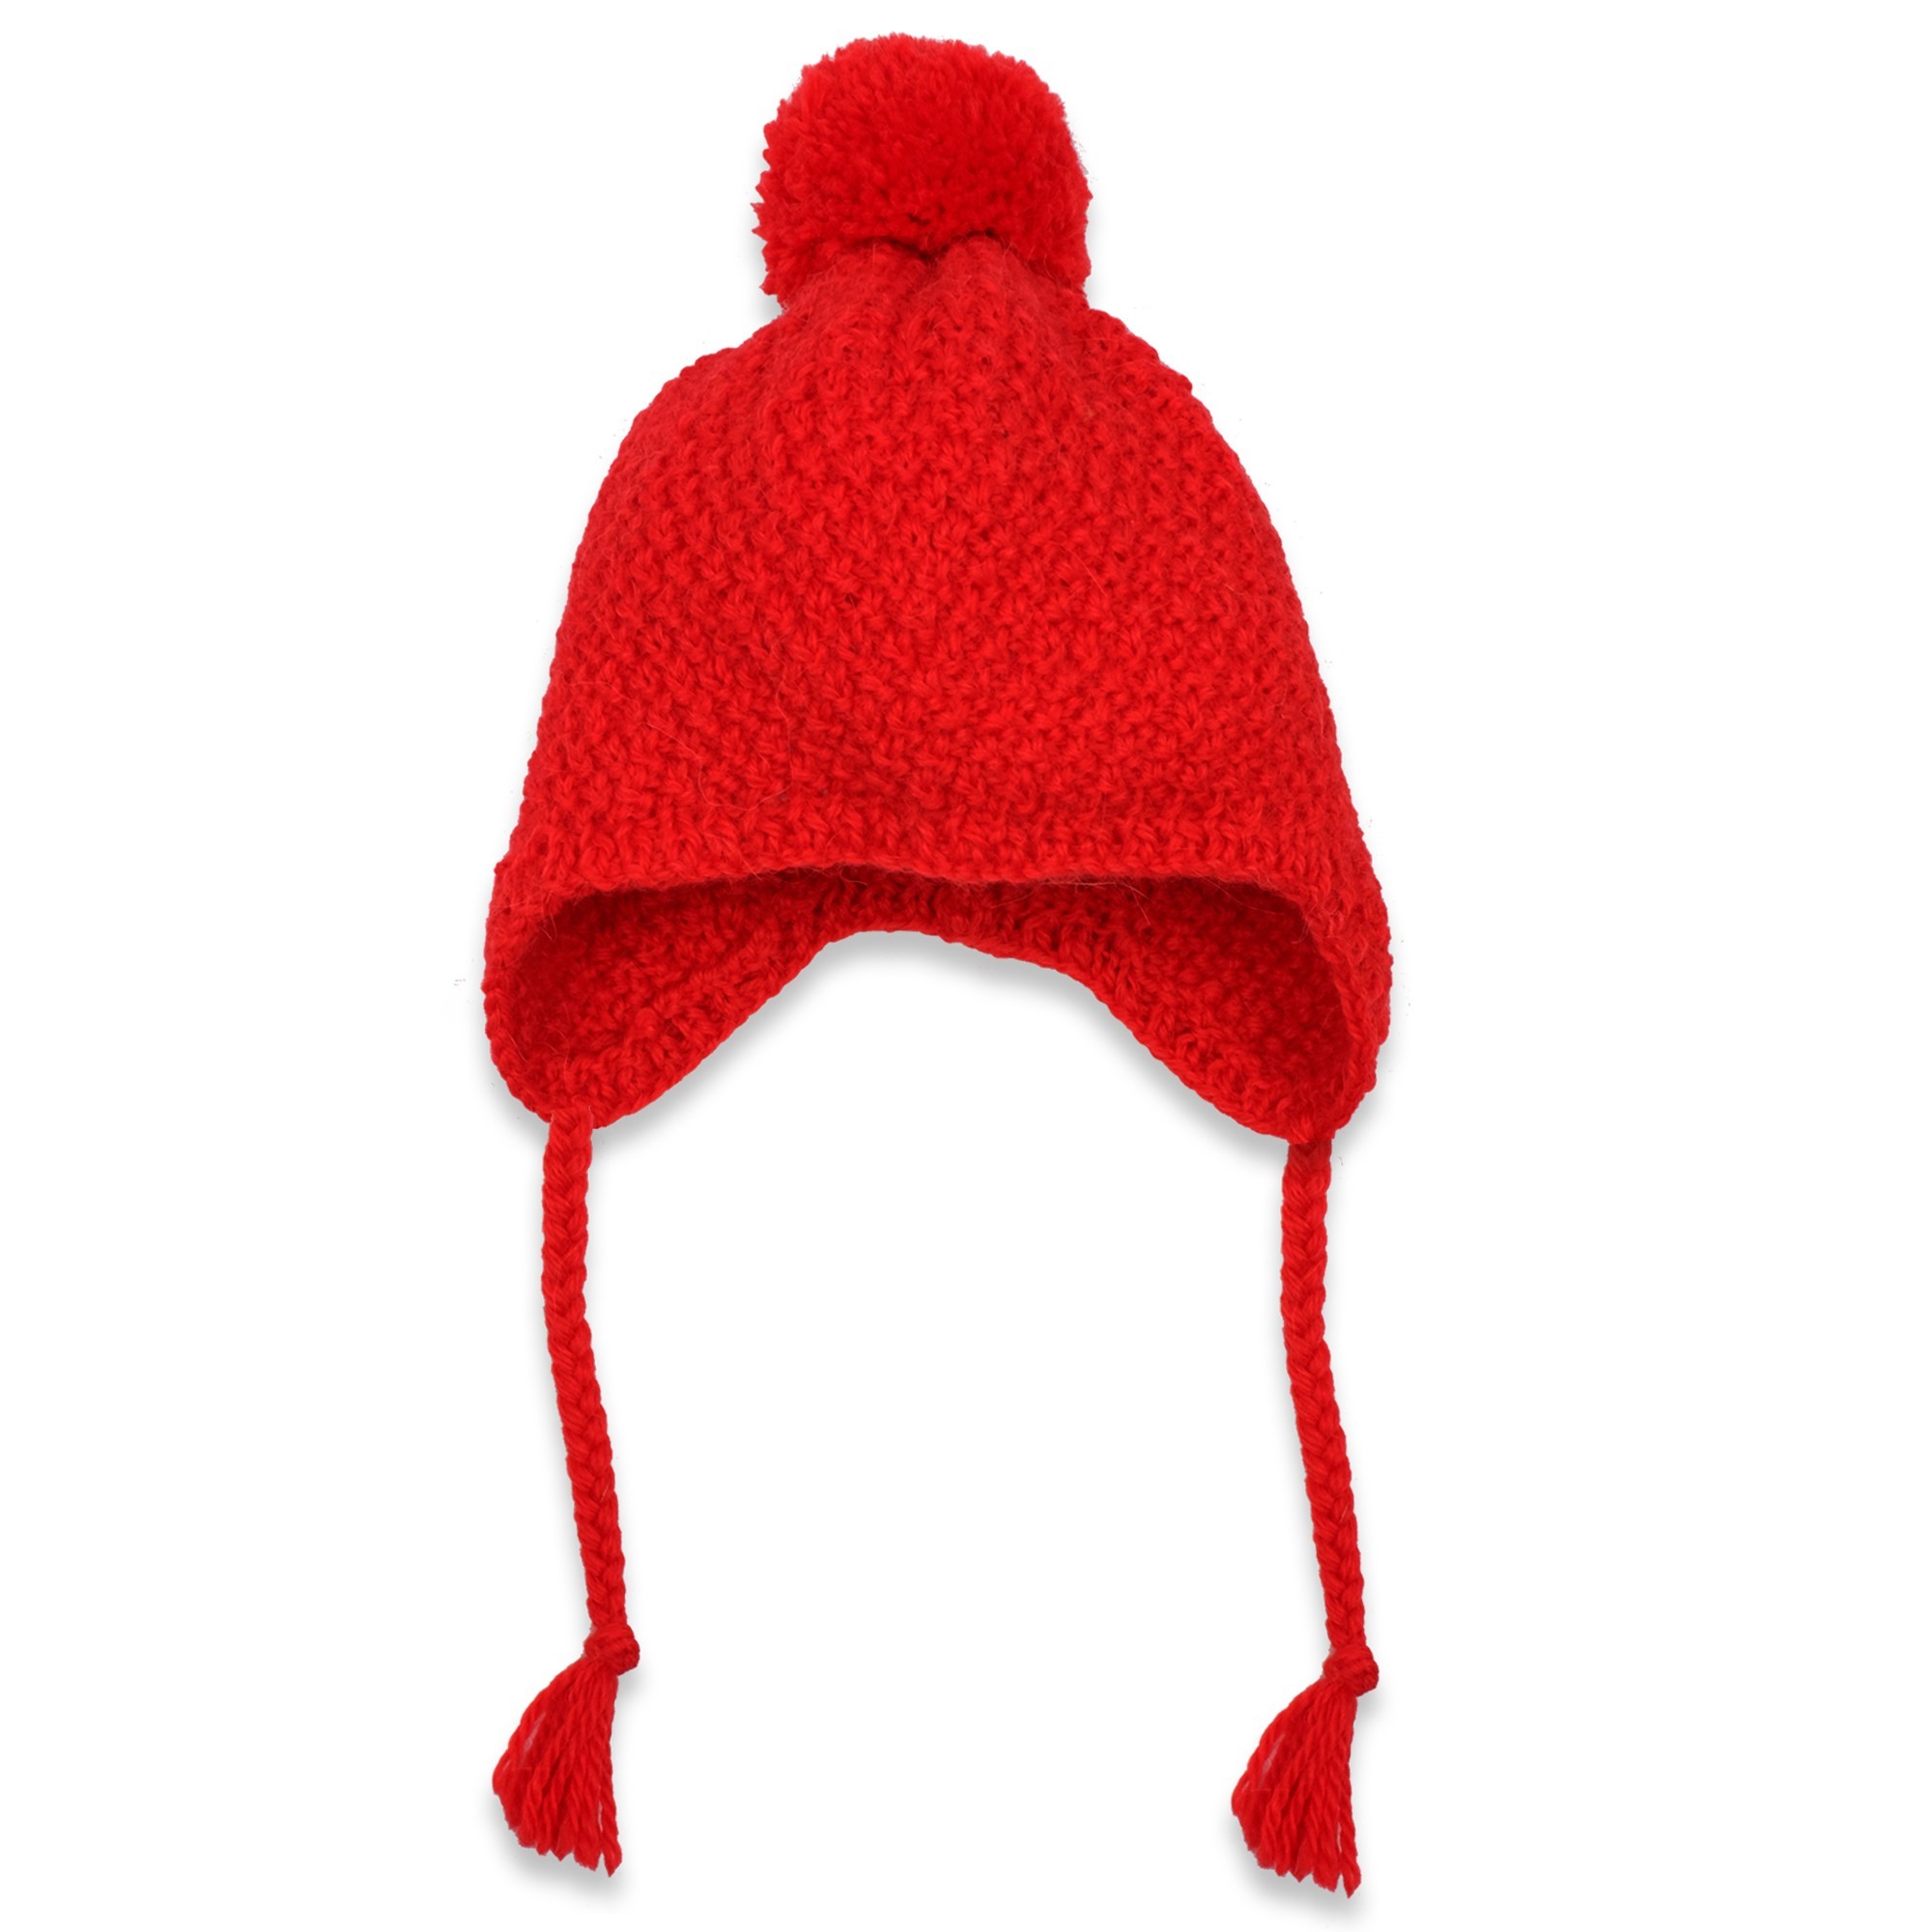 tricoter un bonnet rouge